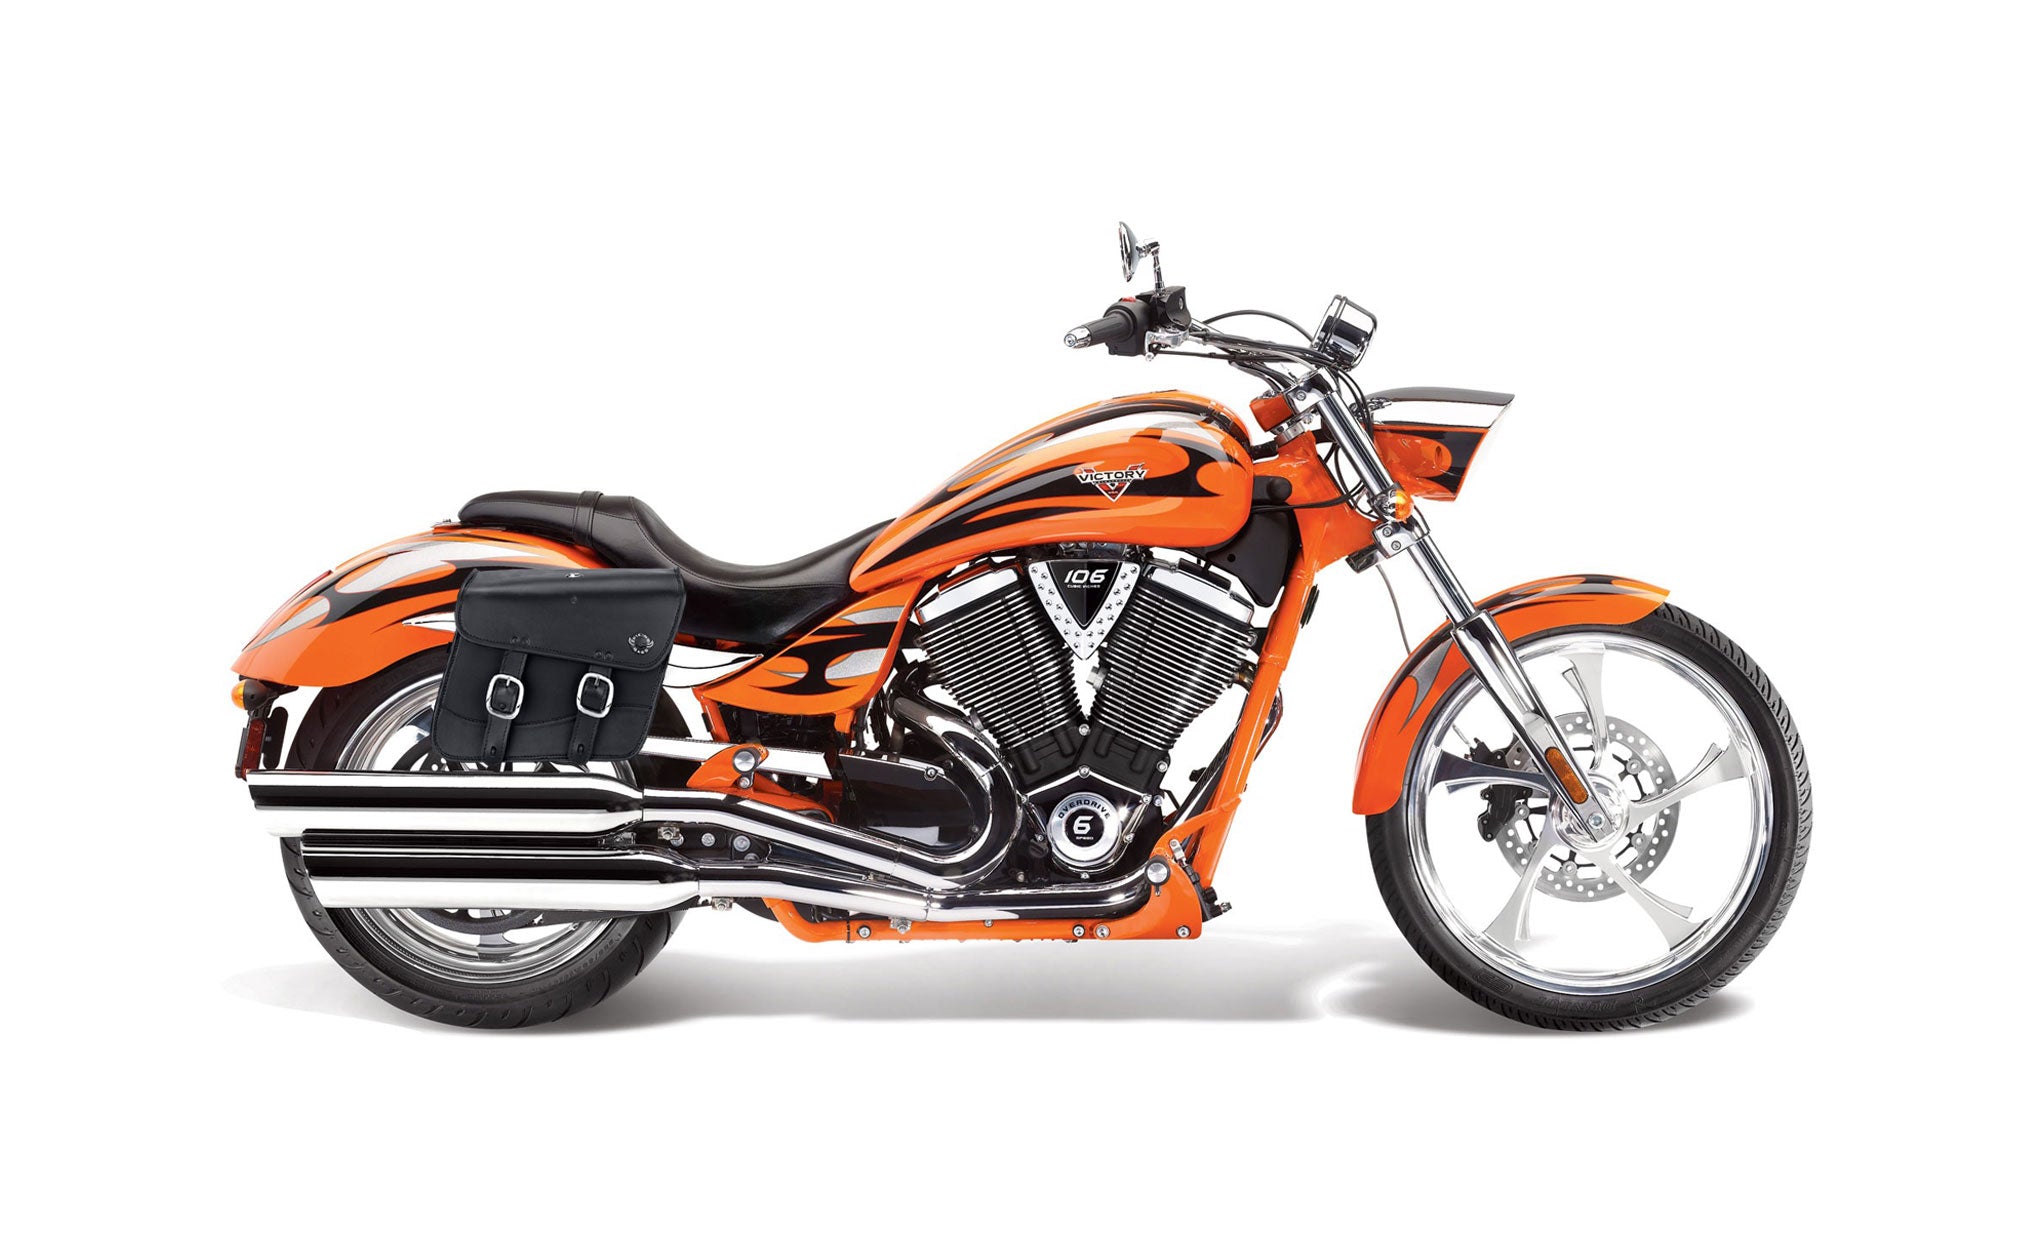 Viking Thor Medium Victory Jackpot Leather Motorcycle Saddlebags on Bike Photo @expand